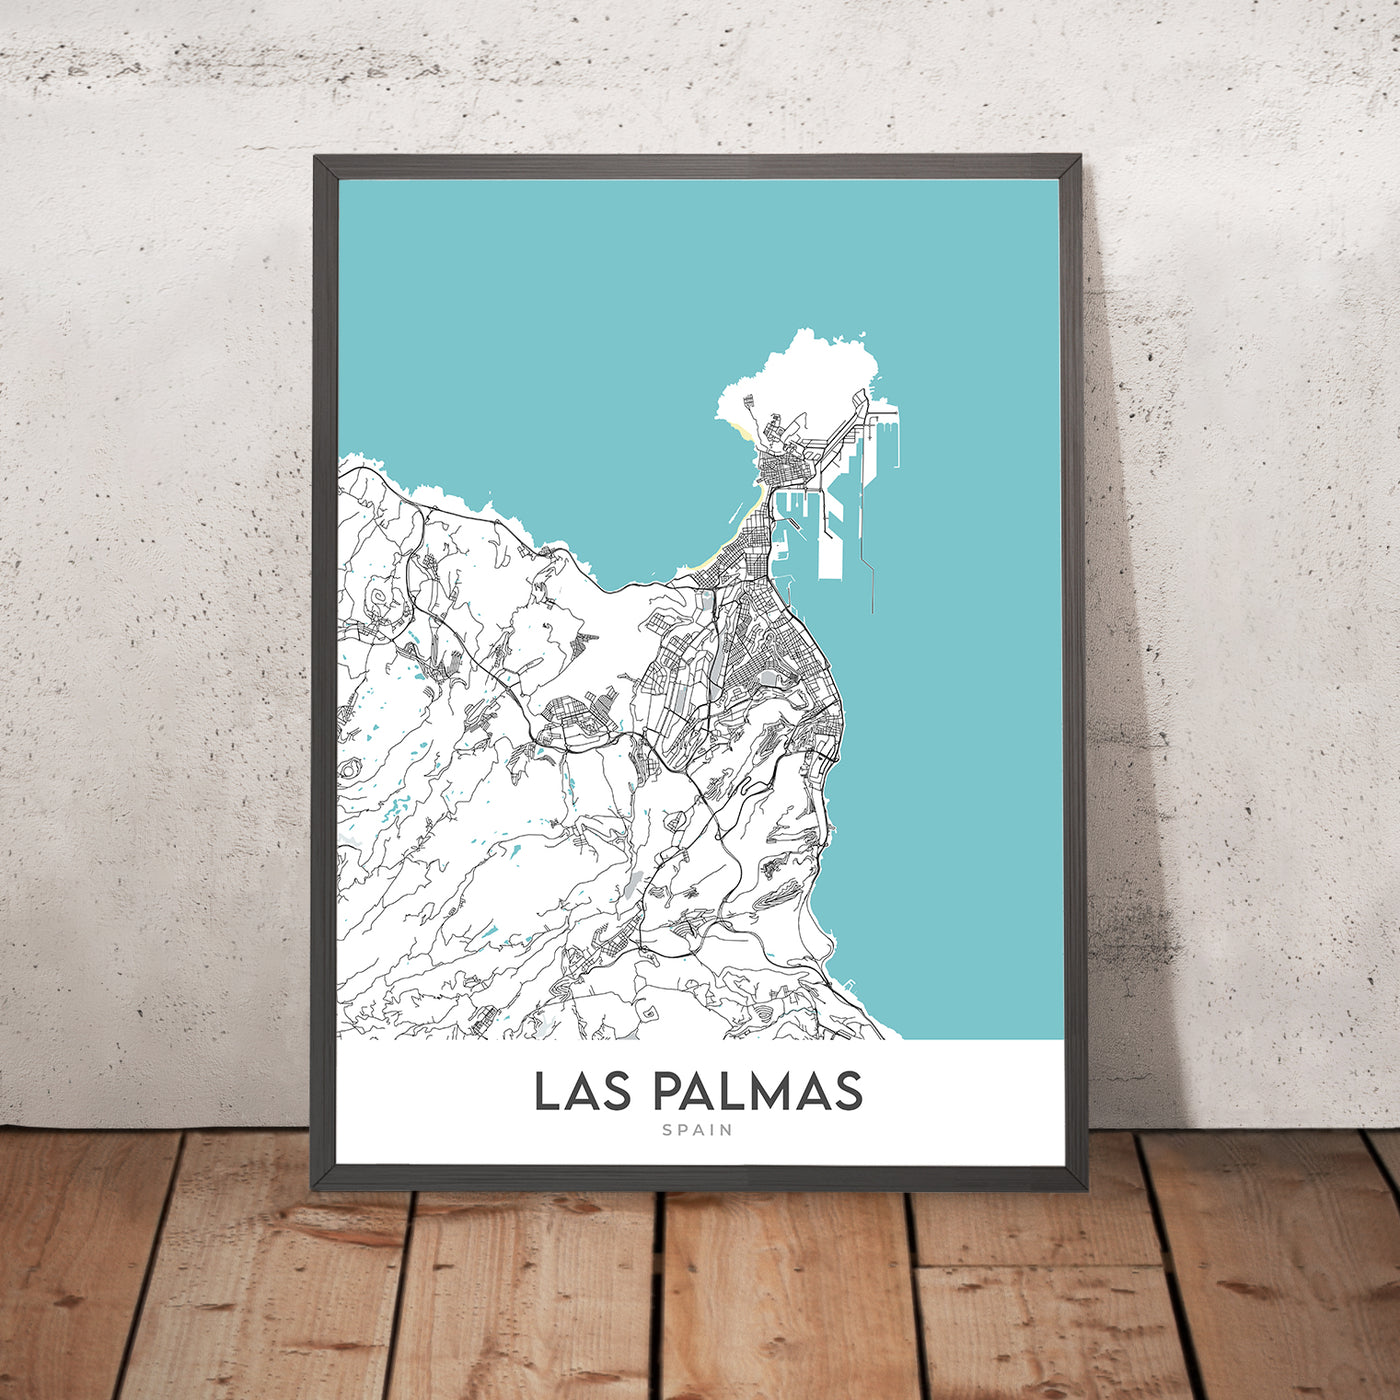 Mapa moderno de la ciudad de Las Palmas, España: Vegueta, Triana, Ciudad Jardín, Catedral de Santa Ana, Playa de Las Canteras